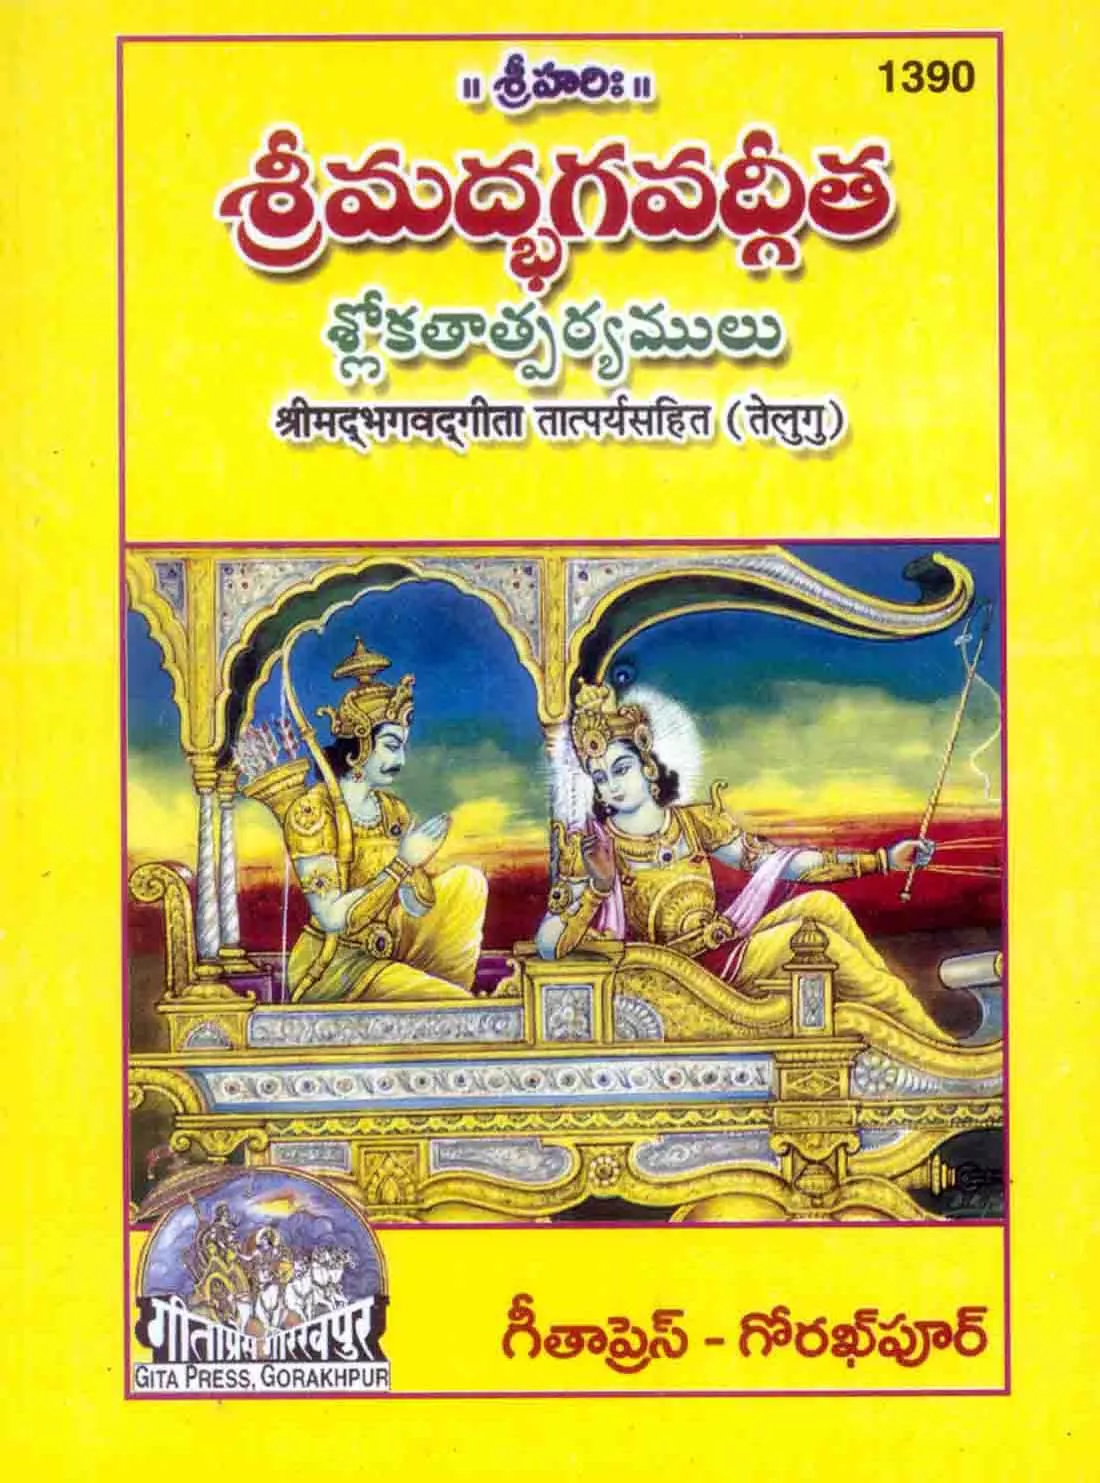 Hanumanchalisa Rangin chitra Sahit (Hindi)